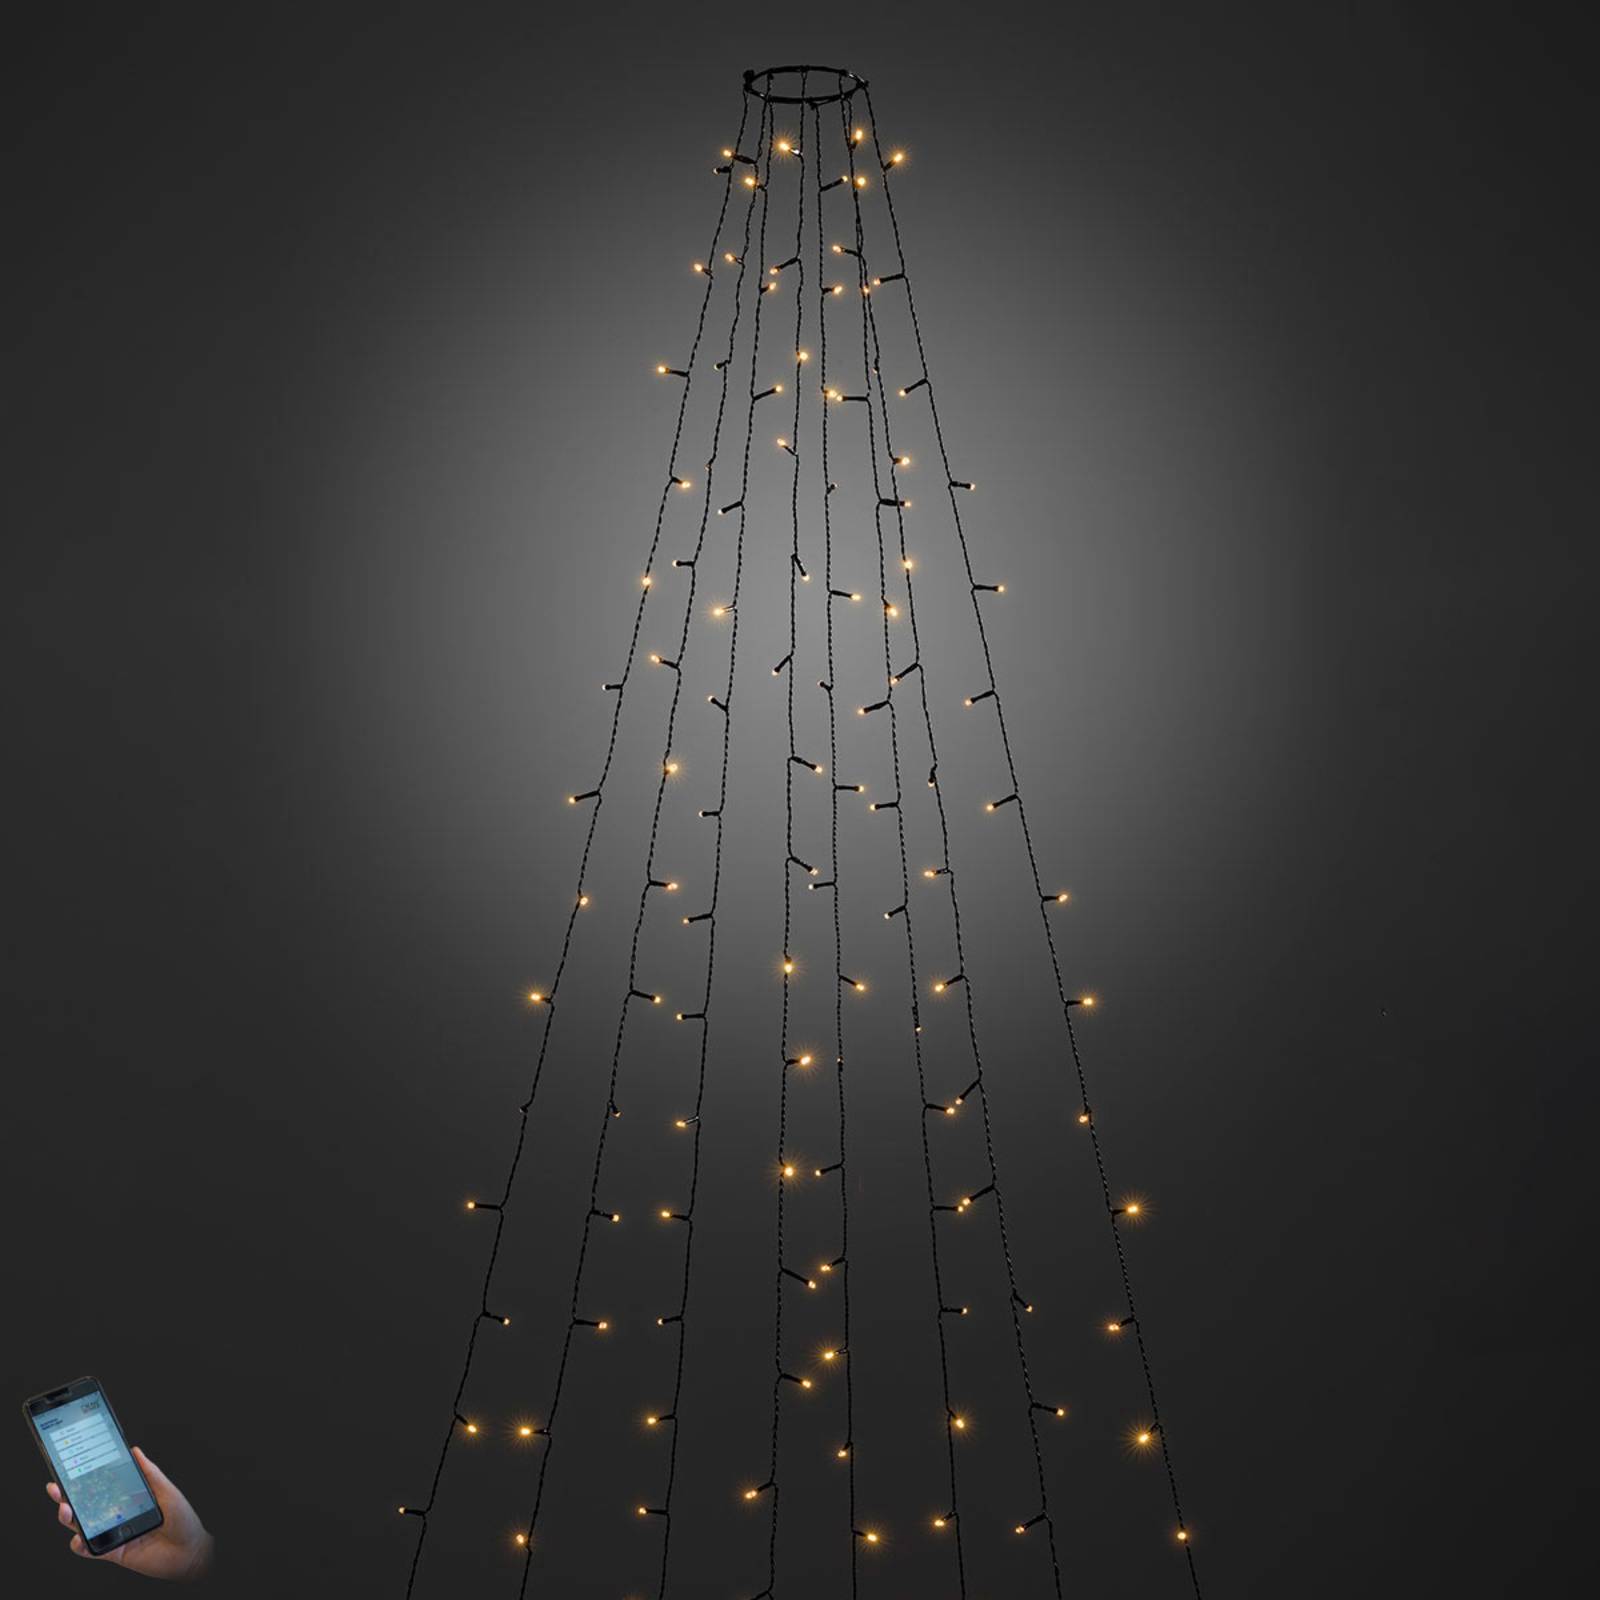 Konstsmide Christmas Venkovní LED plášť na stromek ovládaný aplikací 400-flg.